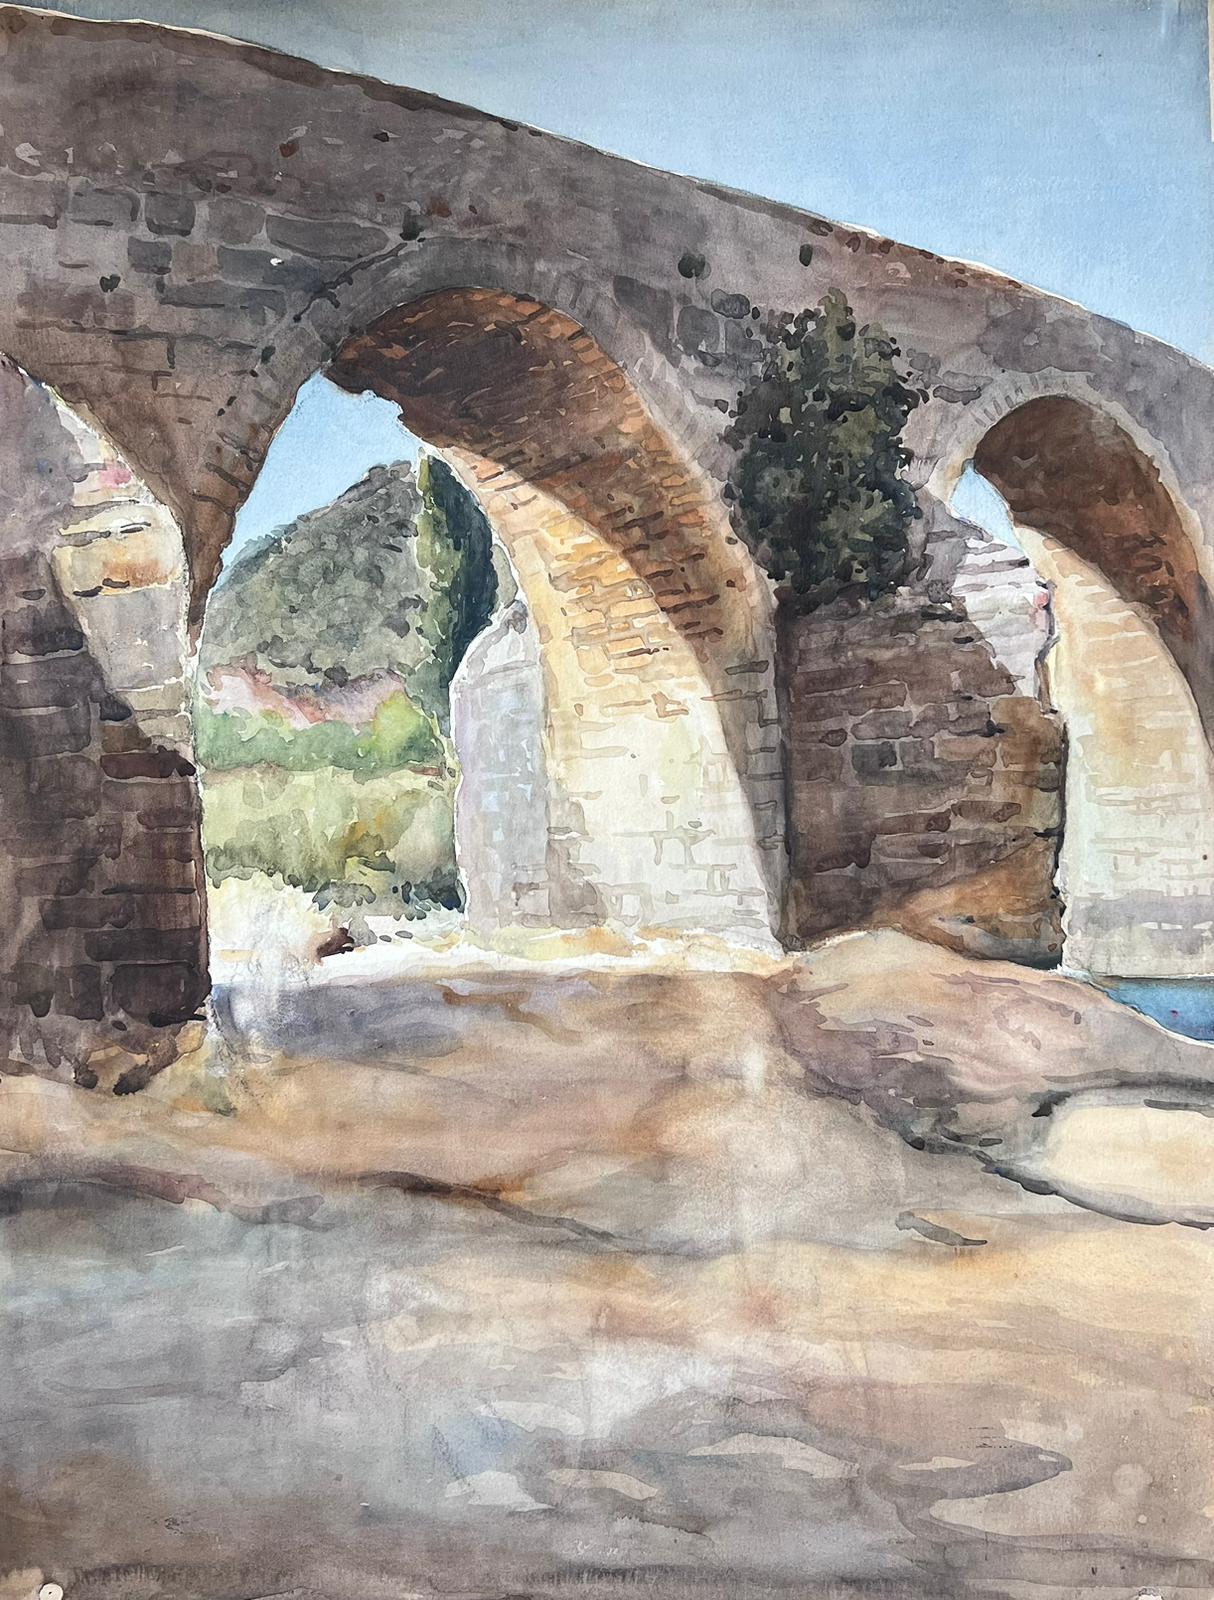 Vieille peinture impressionniste française - Traîneau de pont en pierre dans un paysage